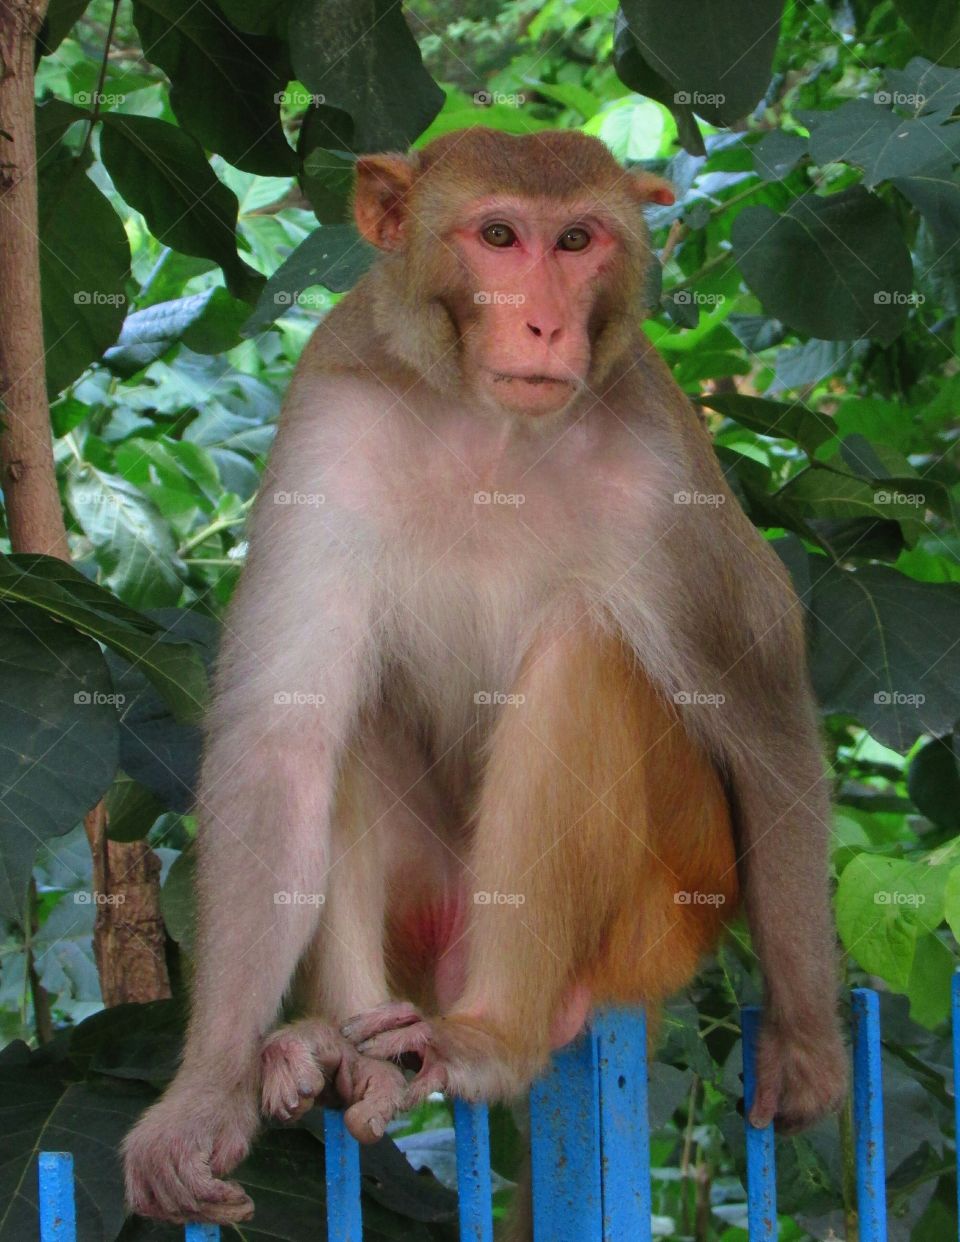 MONKEY , monkey, indian monkey , animal, wildlife, cute monkey, monkey photography, monkey in forest, forest